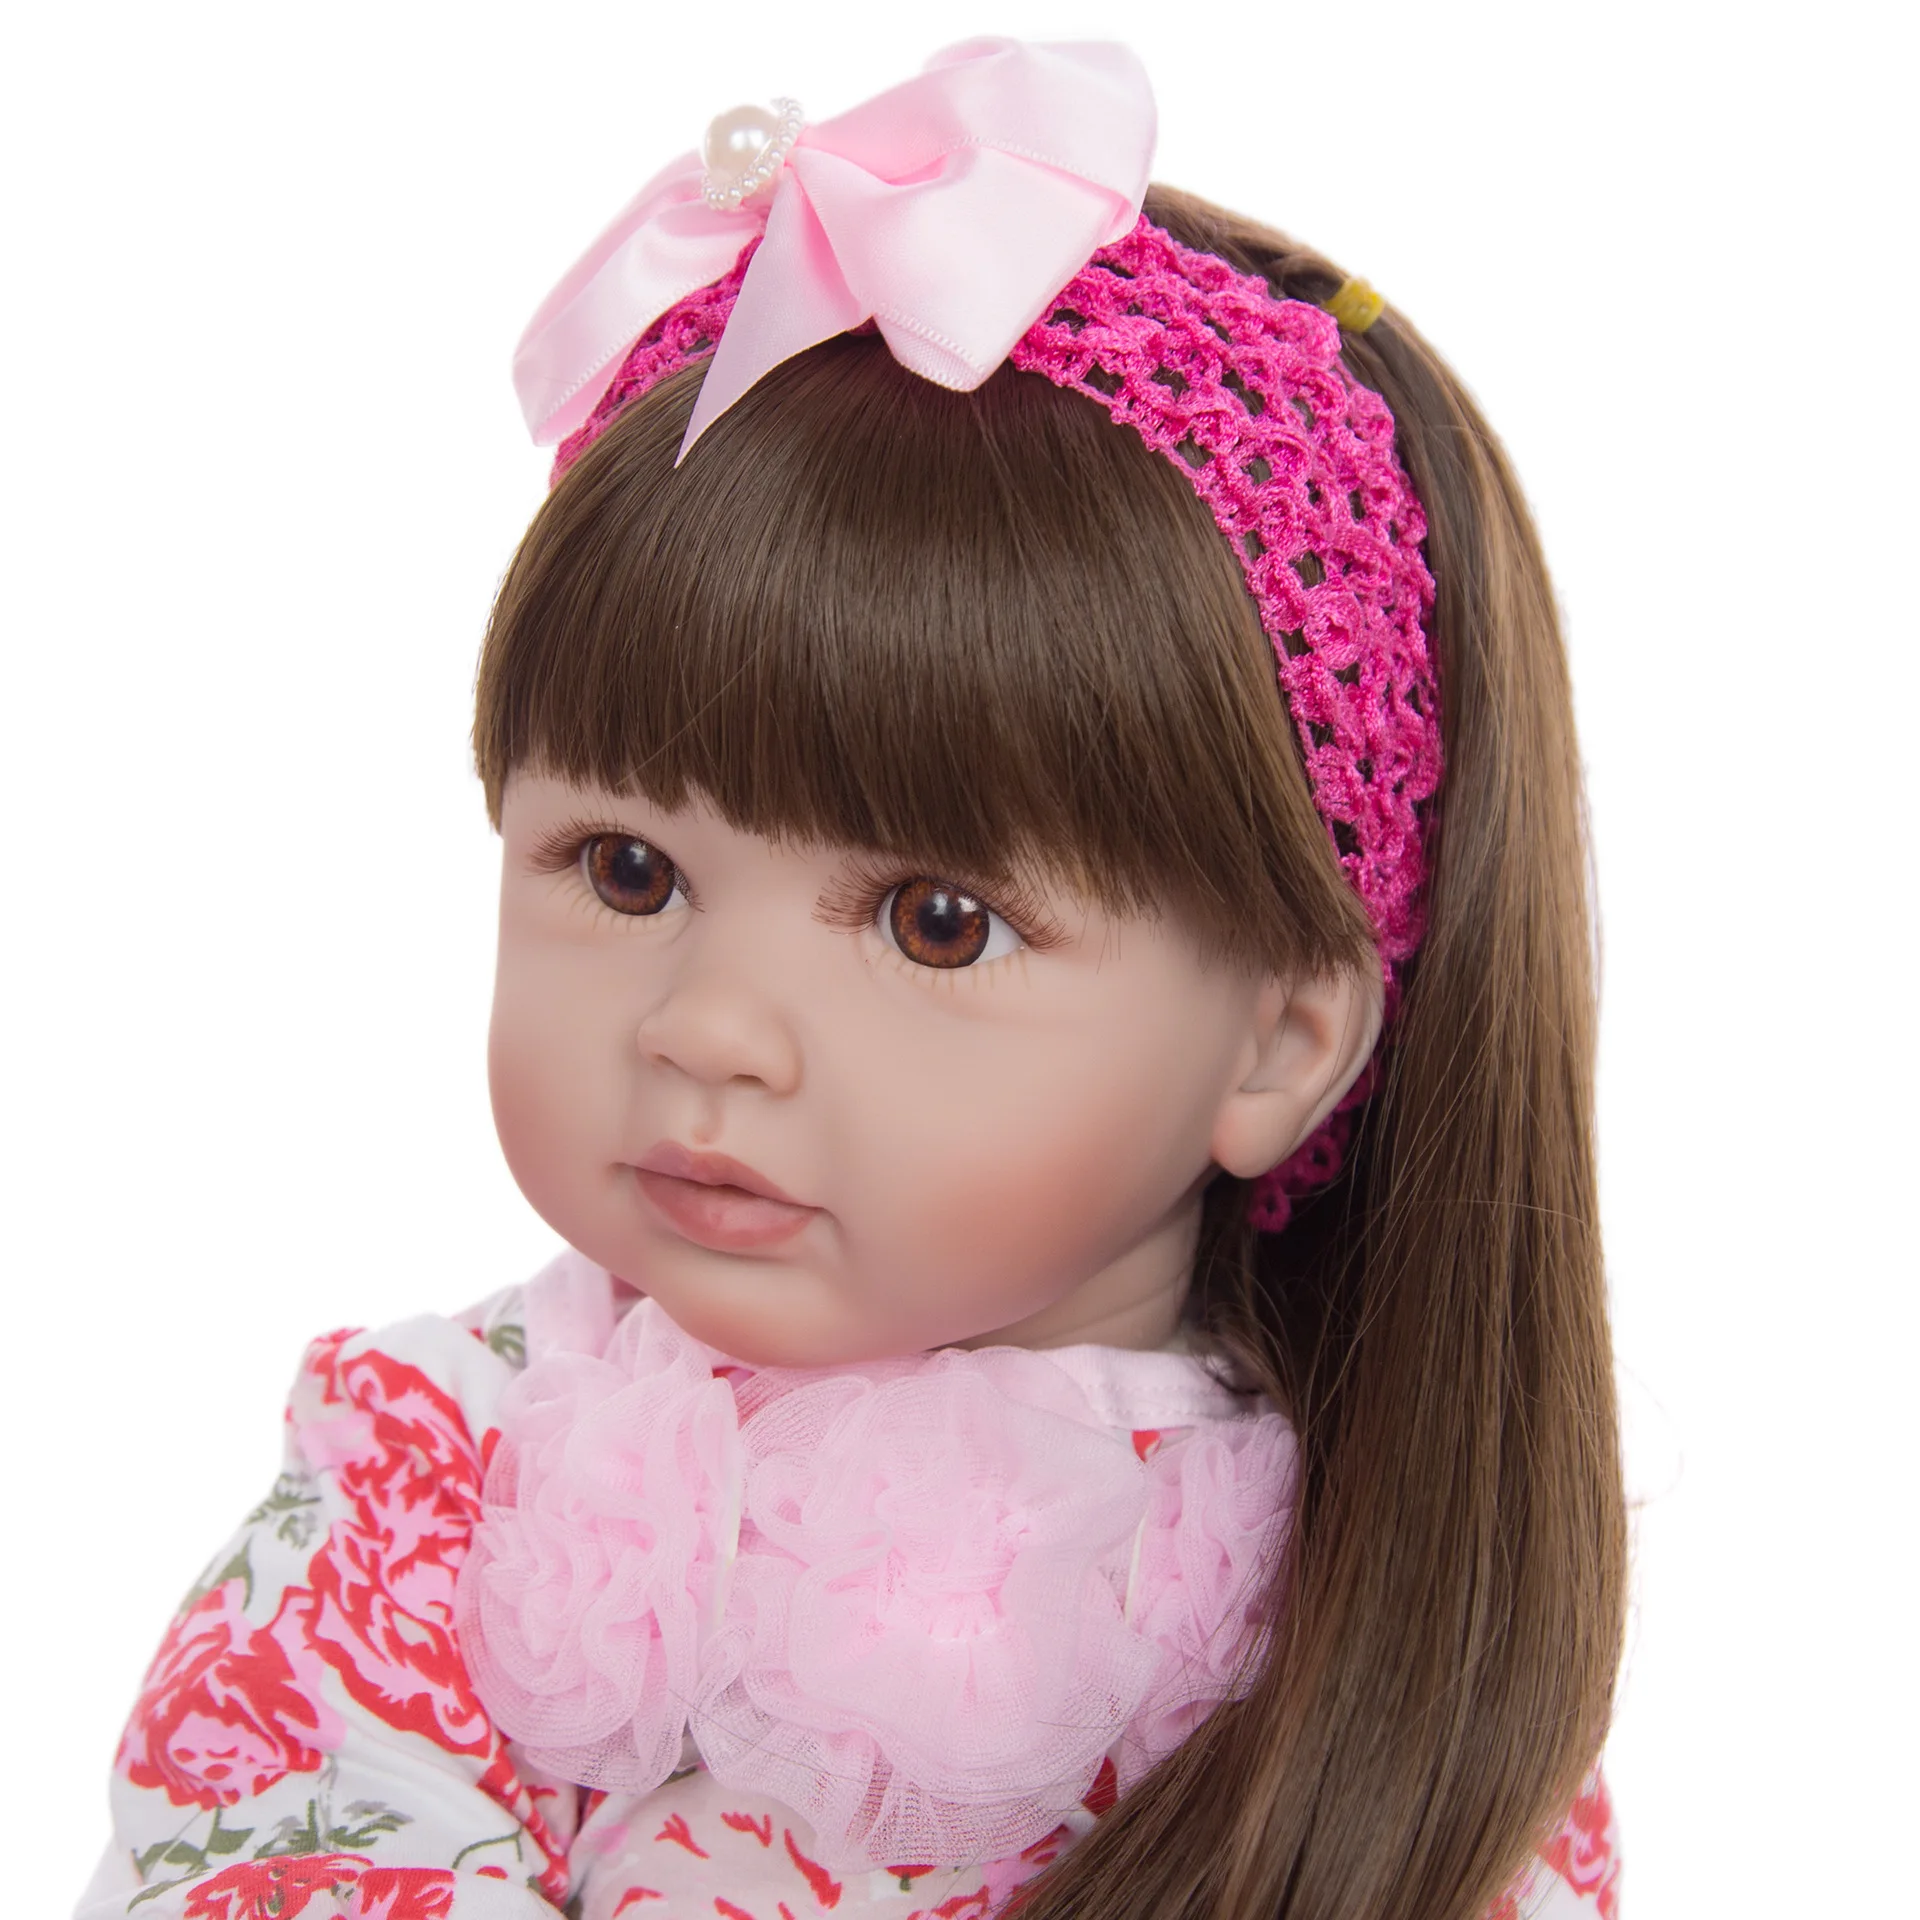 60 см силиконовые игрушки Reborn Baby Doll 24 дюйма винил принцесса девочка ребенок малыш гиперреалистичный подарок на день рождения игровой дом игрушки Bonecas